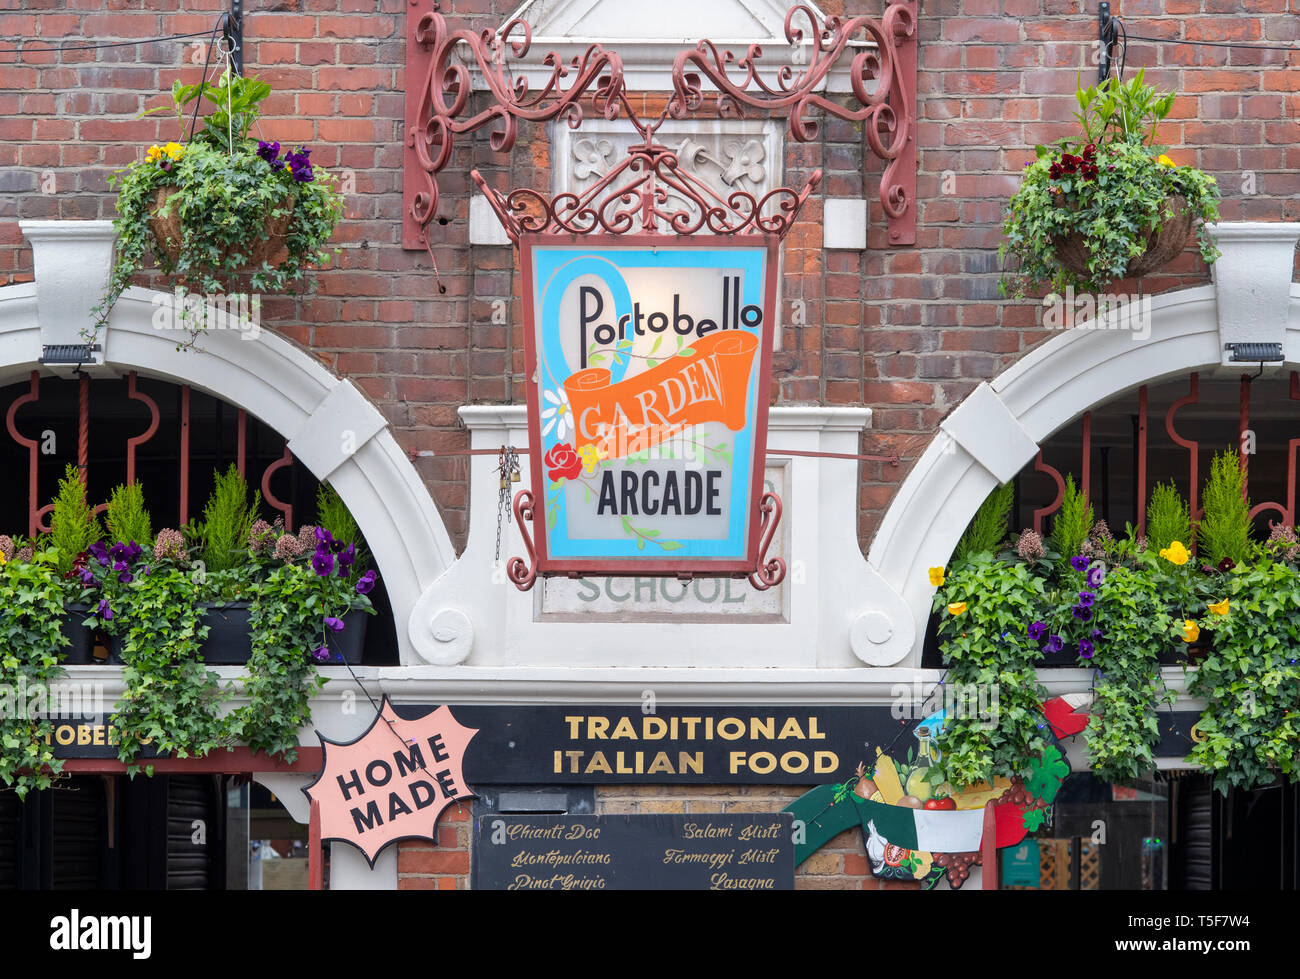 Portobello garden arcade exterior. Italian Restaurant in Portobello Road, Notting Hill, London, England Stock Photo